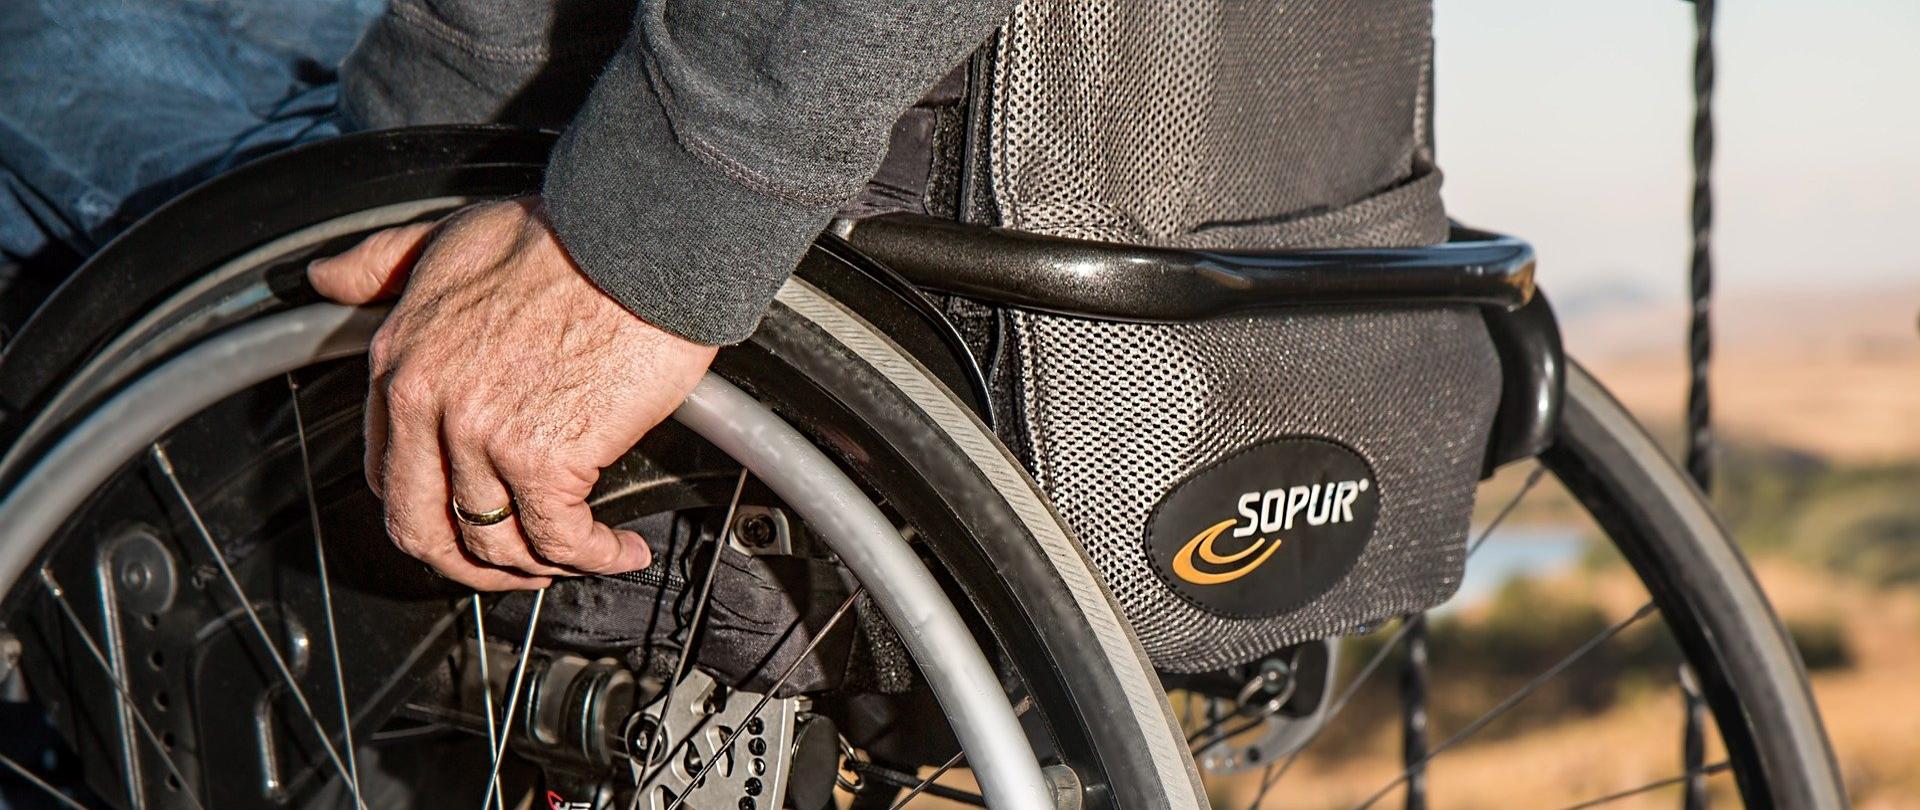 Aktywni niepełnosprawni – narzędzia wsparcia samodzielności osób niepełnosprawnych